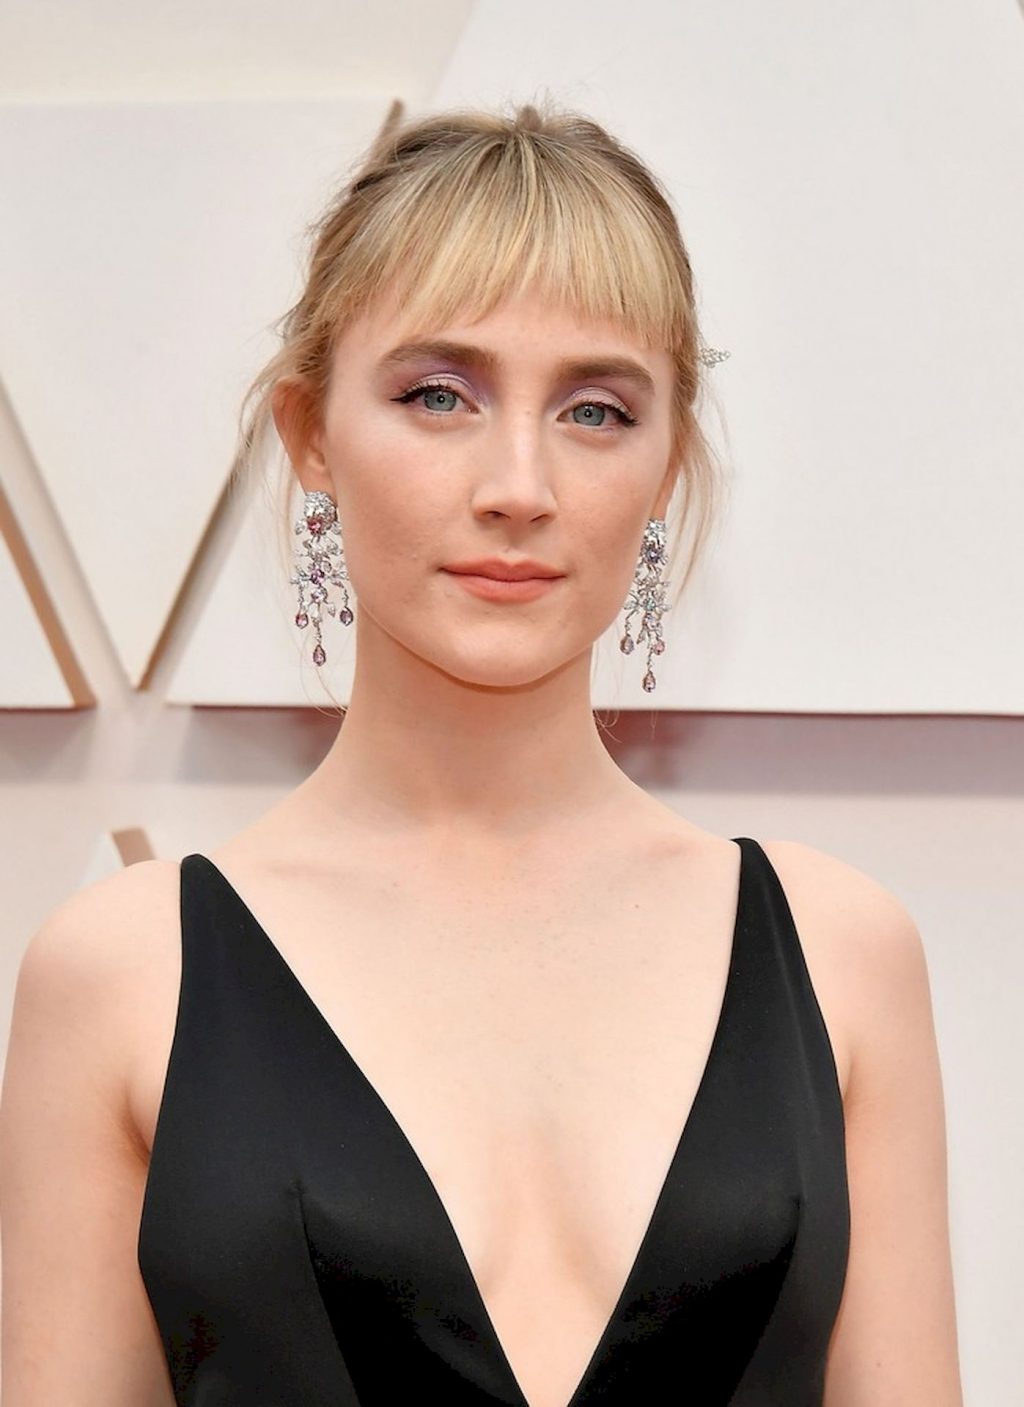 Tittyless Saoirse Ronan Arrives to the 92nd Academy Awards (8 Photos)